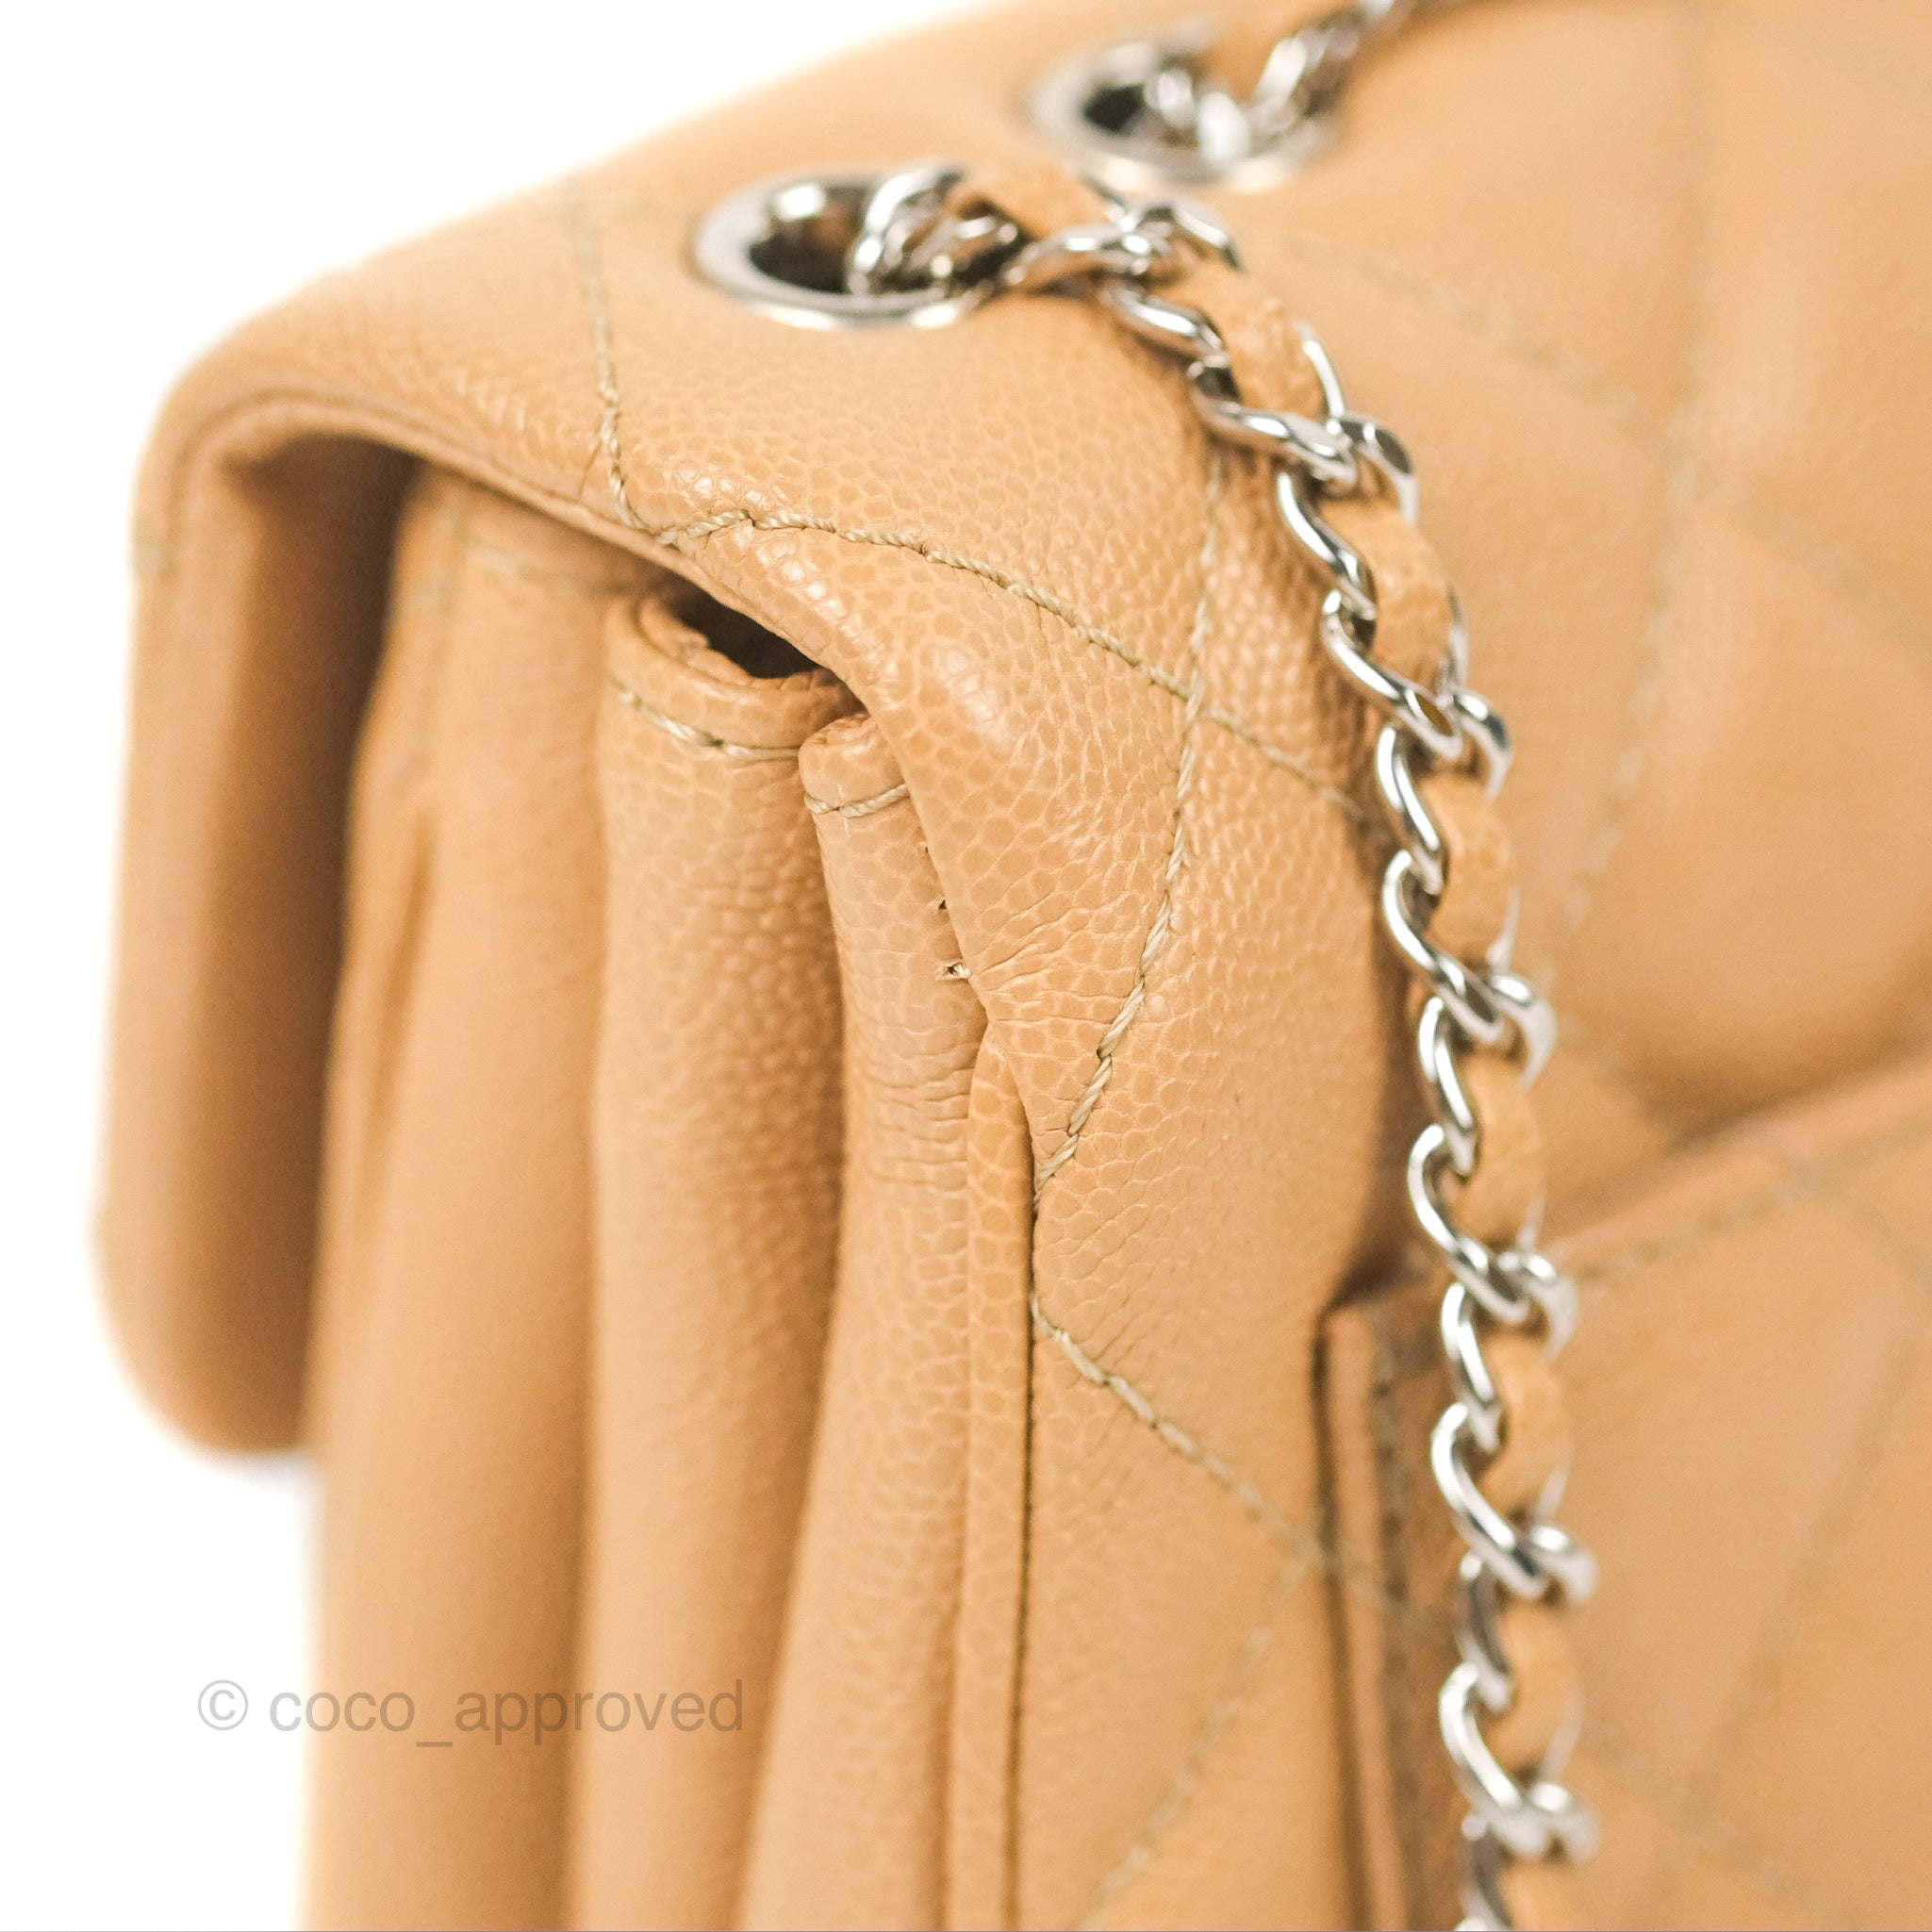 Chanel 2.55 Medium Shoulder Bag Black Aged Calfskin